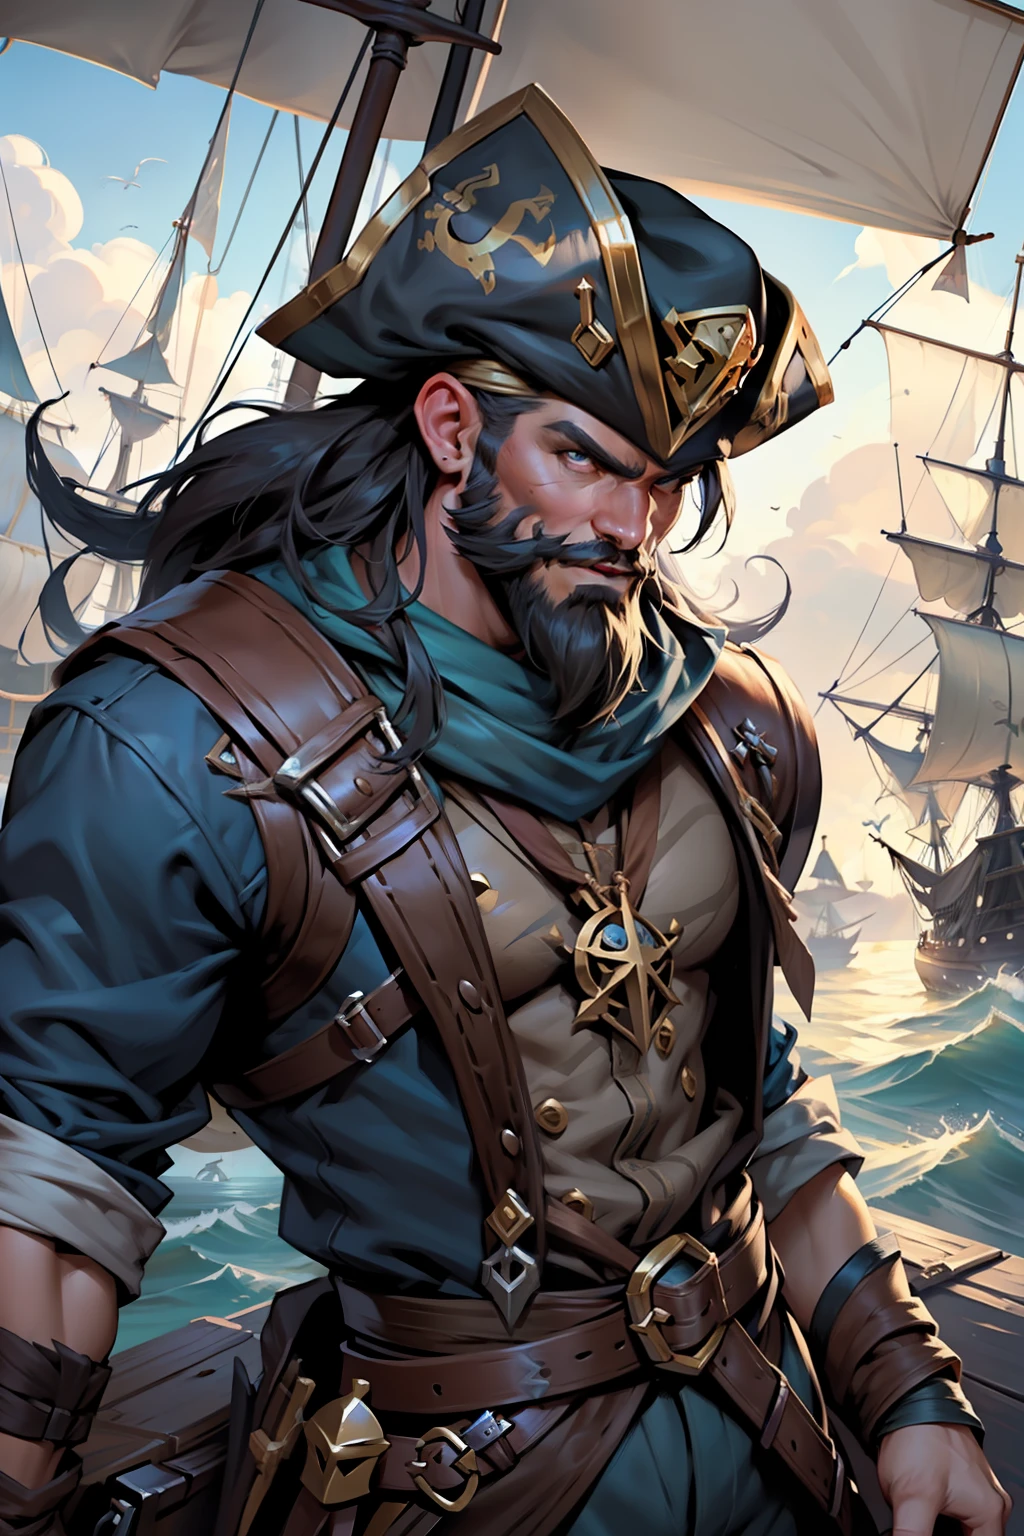 想像《英雄聯盟》遊戲中海盜角色普朗克的詳細插圖. 該圖像描繪了普朗克擺出令人生畏且威嚴的姿勢, 作為可怕的海盜船長，他是. 其外觀遵循遊戲的標誌性風格, 具有角色的特徵元素. 插圖展現了豐富的細節, 從你臉上的皺紋, 表達您的航海經驗, 甚至他戴的海盜配件, 就像船長的帽子一樣, 用鉤子代替一隻手和一條木腿. 你的衣服已經穿了, 揭示你的海上生活. 場景的燈光很戲劇性, 突出陰影並在角色周圍營造神秘的氛圍. 在後台, 有海洋元素, 像海盜船一樣, 波濤洶湧的海浪或遙遠的島嶼, 強化海盜主題. 藝術是按照英雄聯盟的風格完成的, 充滿活力的色彩和引人注目的筆觸. 它抓住了普朗克的殘酷和兇猛的本質, 傳達出他的危險氣息和領導力. 一般來說, 該圖像是對角色的令人印象深刻且鼓舞人心的表現, 準備好讓《英雄聯盟》粉絲沉浸在普朗克的海盜世界中